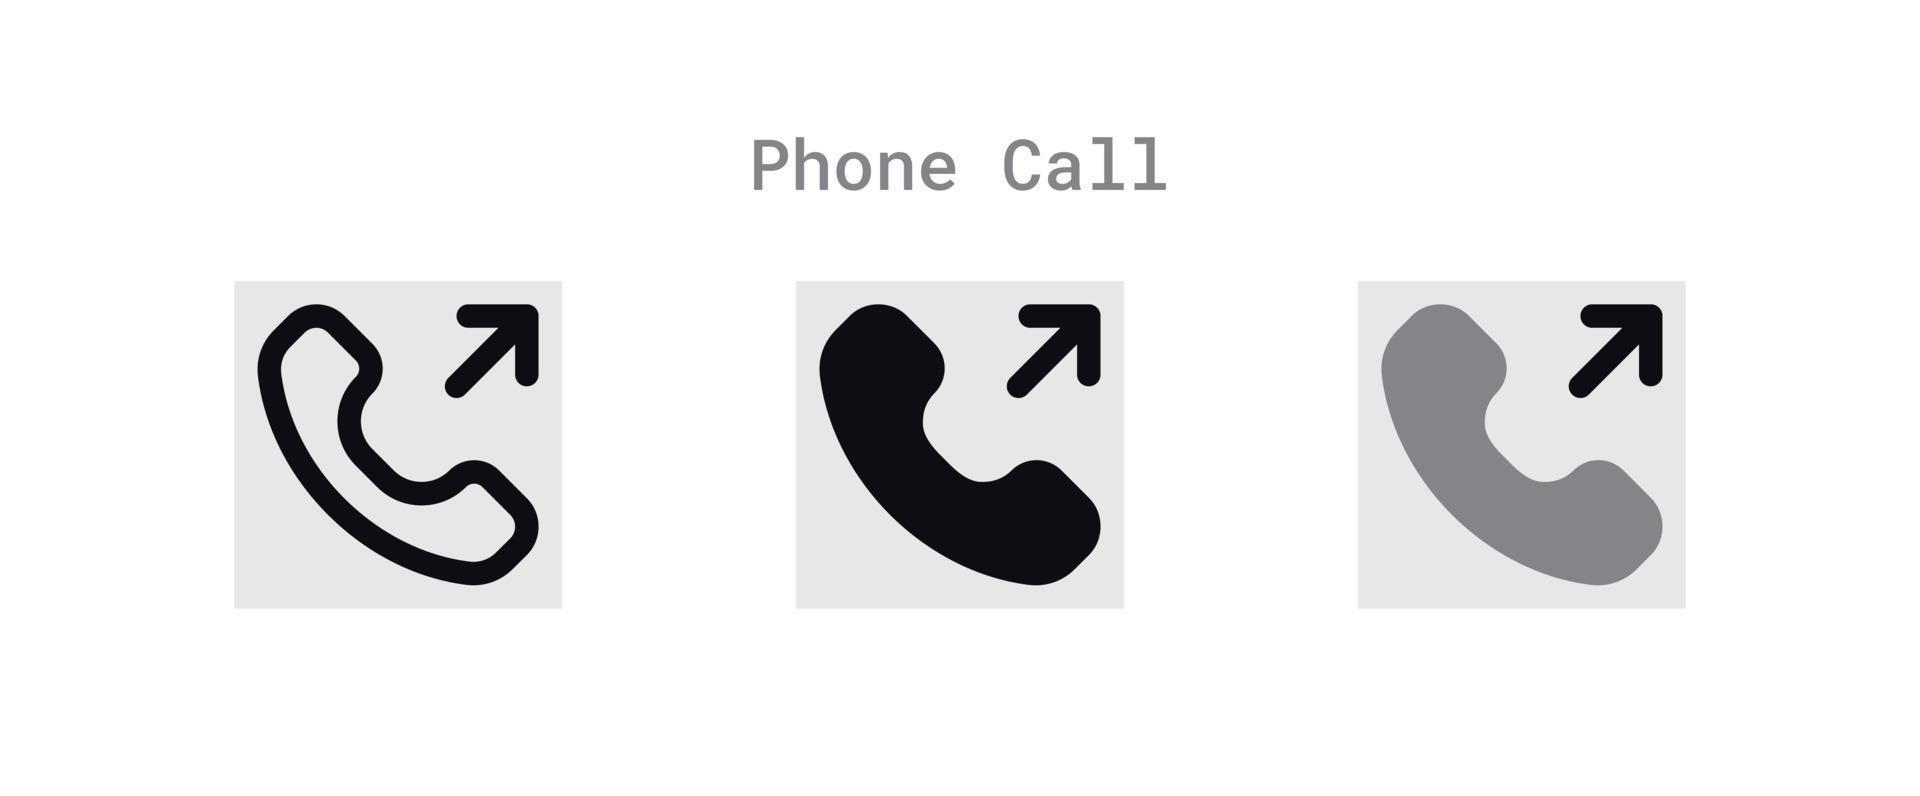 utgående telefon ring upp ikoner ark vektor